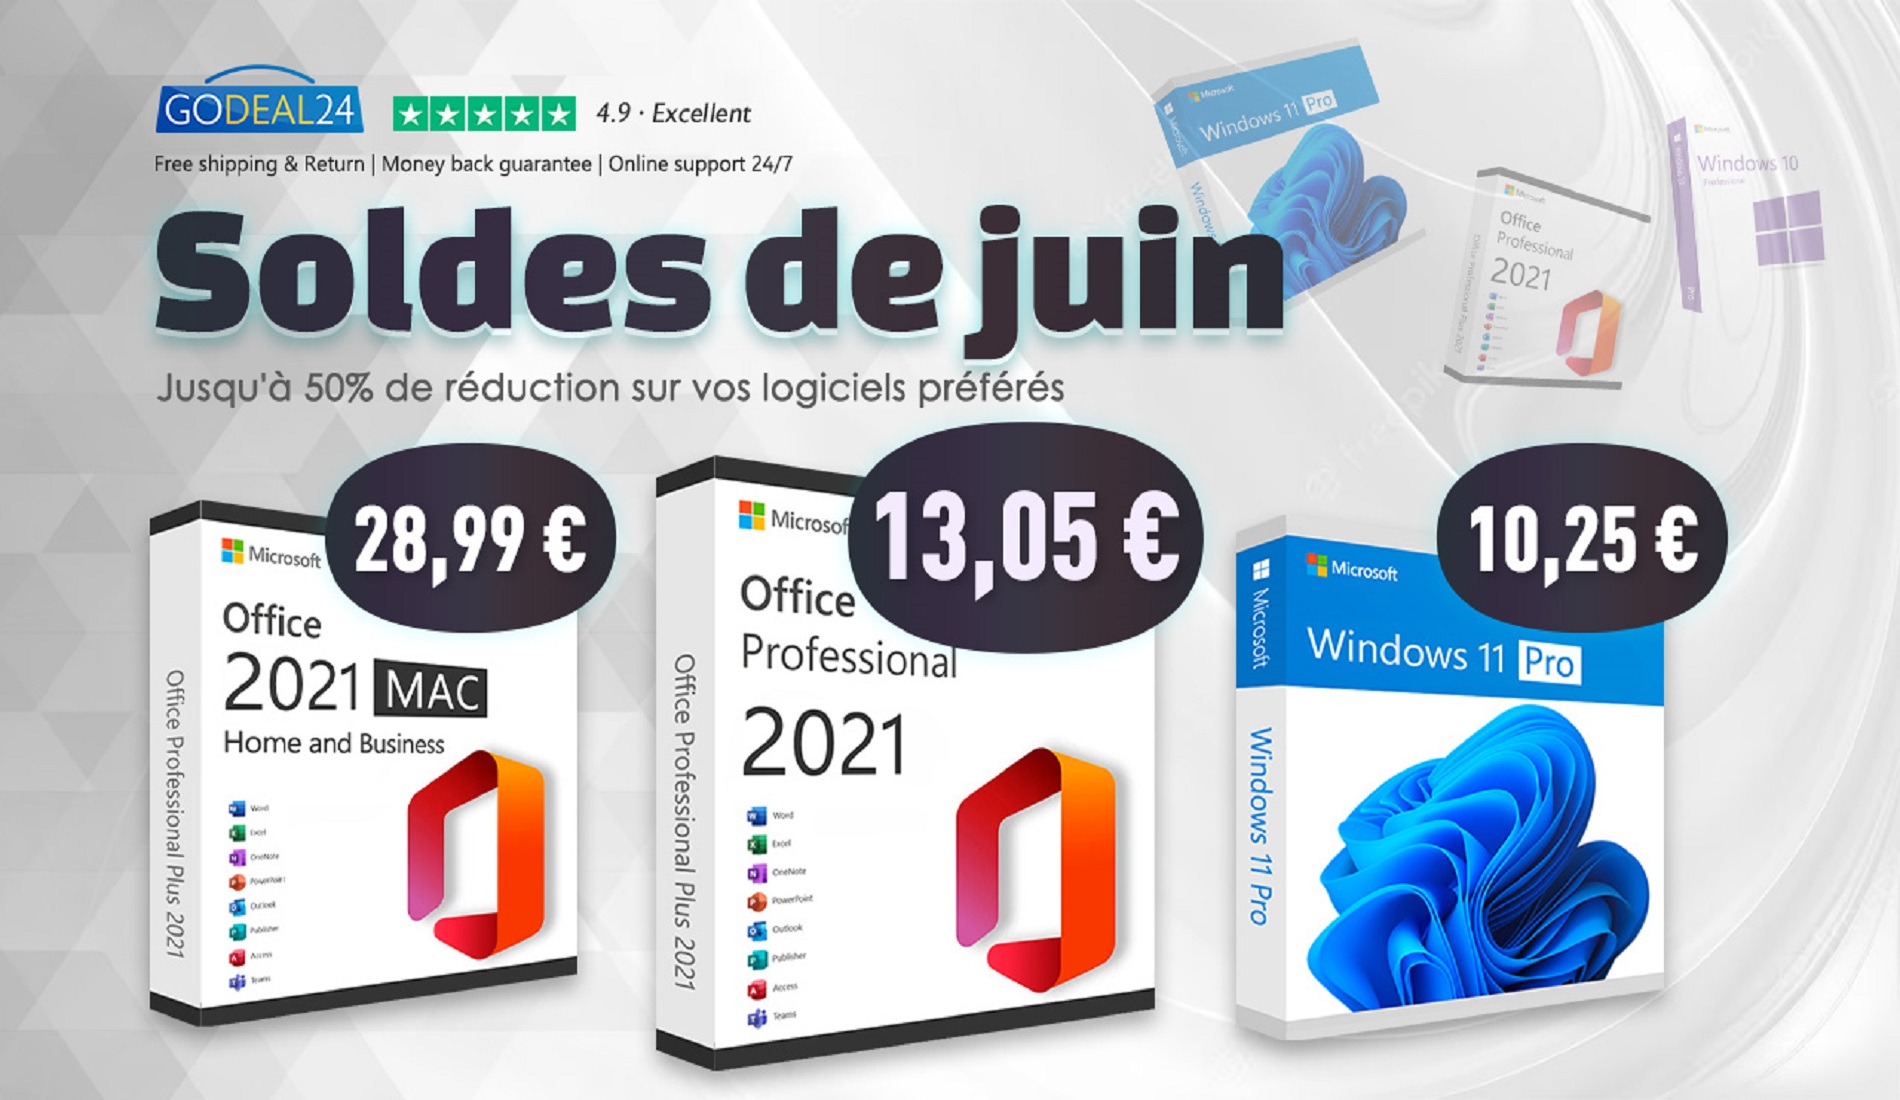 Vente flash : profitez d’Office 2021 à 13,05€ et de Windows 11 Pro à 10,25€ chez Godeal24